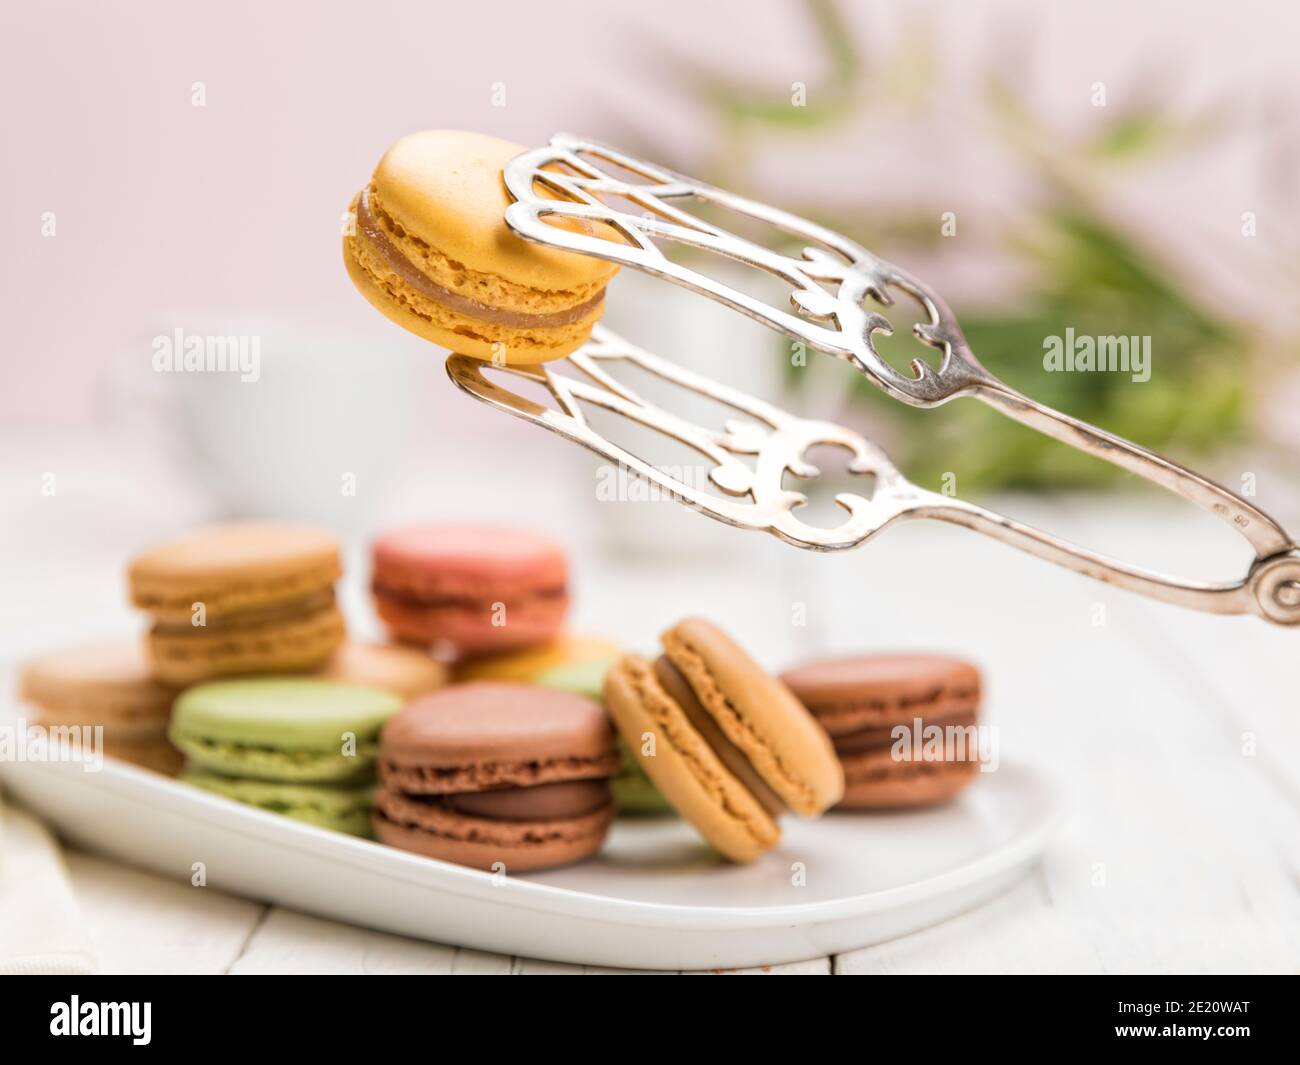 Surtido de pasteles de macarons franceses en mesa de café, se centran en un sabor a limón que se sostiene con las pinzas de pastelería, Foto de stock